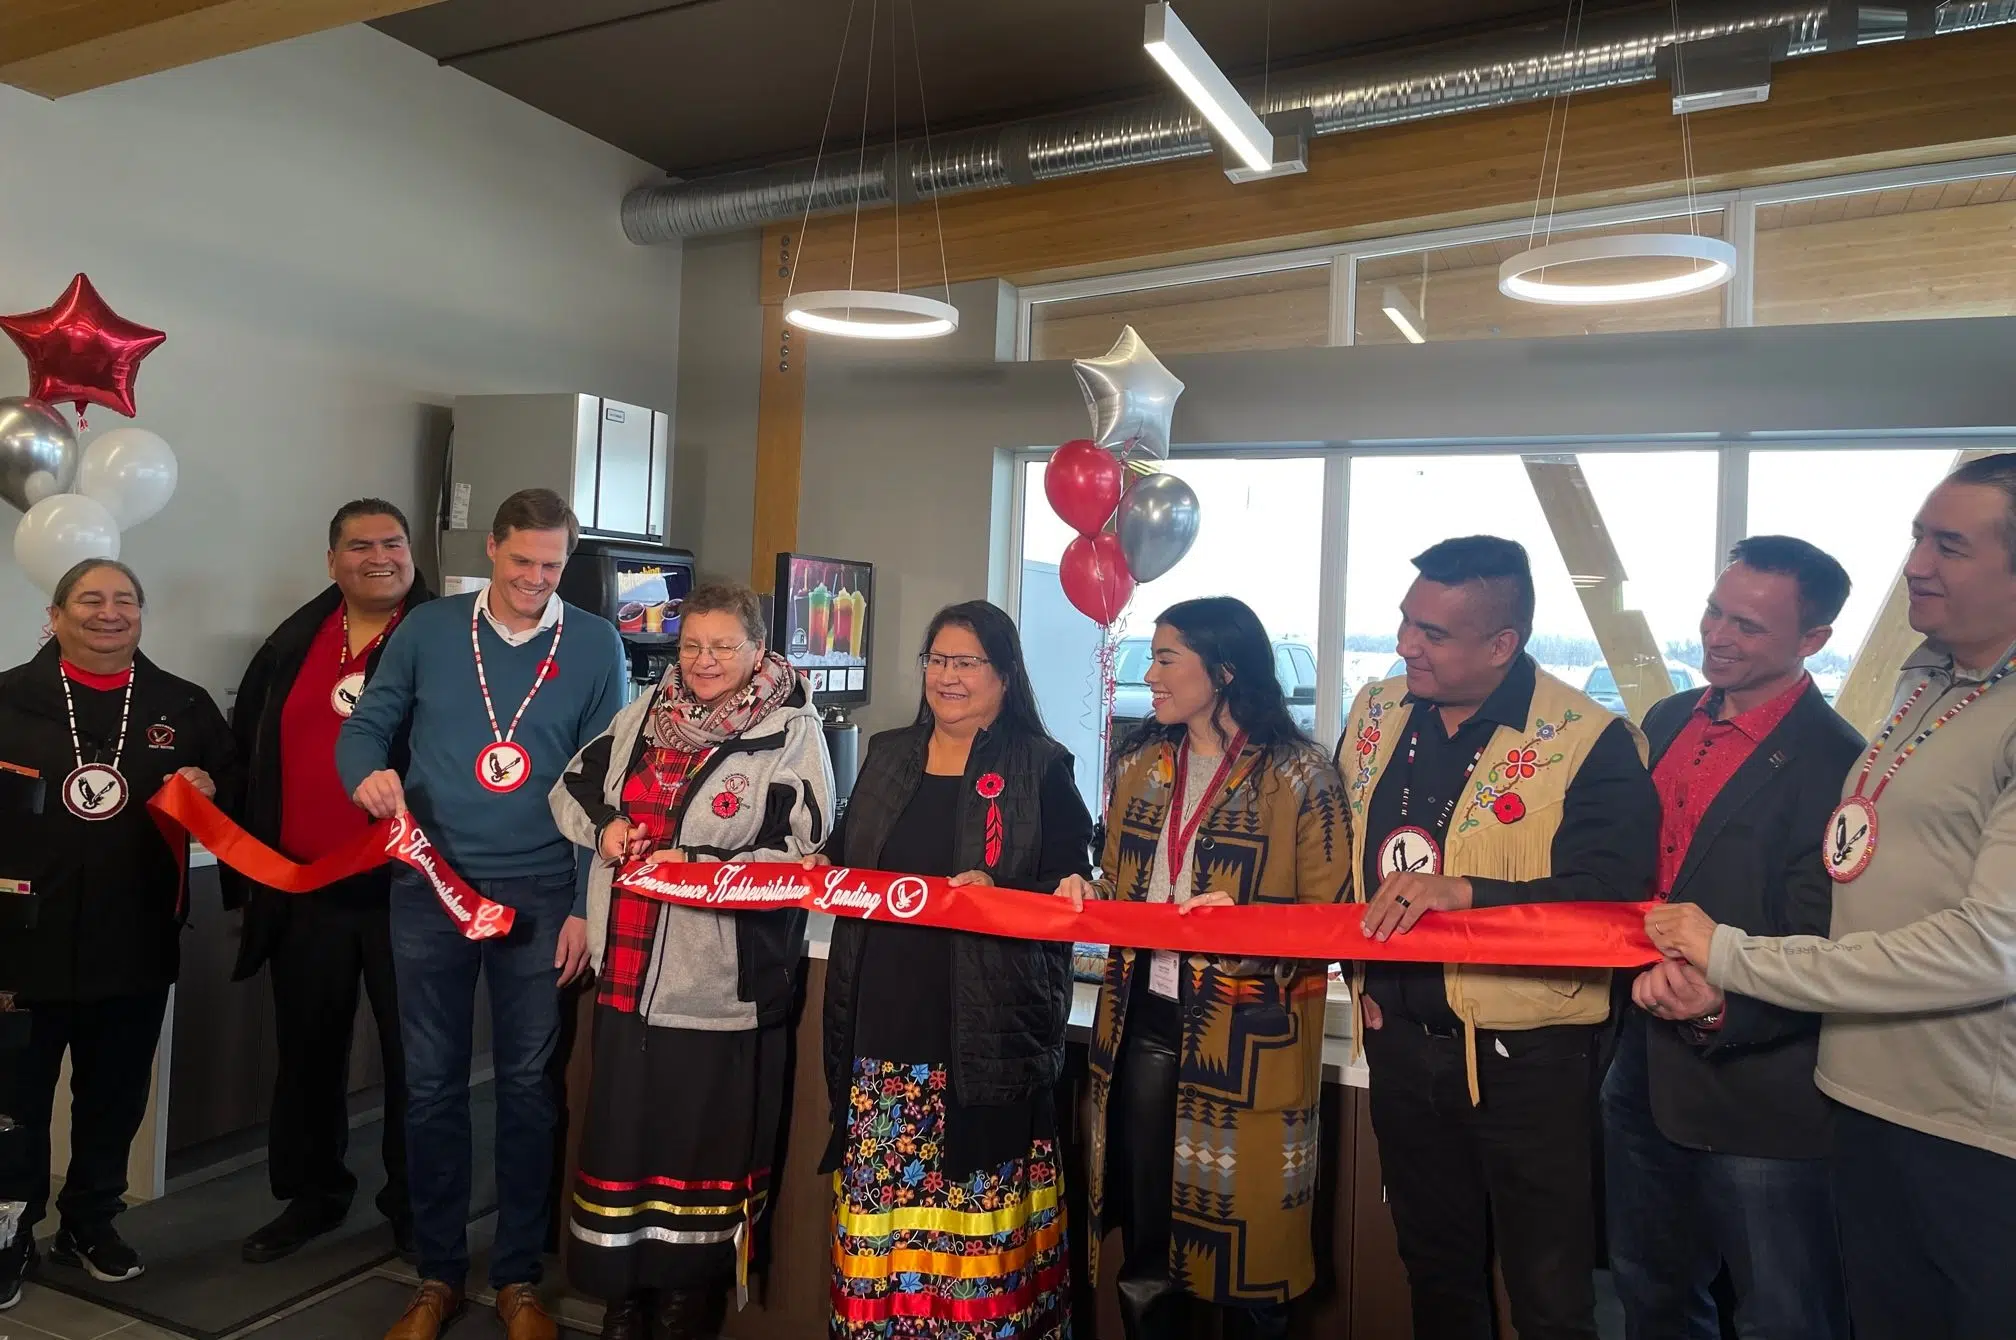 Kahkewistahaw First Nation opens first business on Saskatoon development